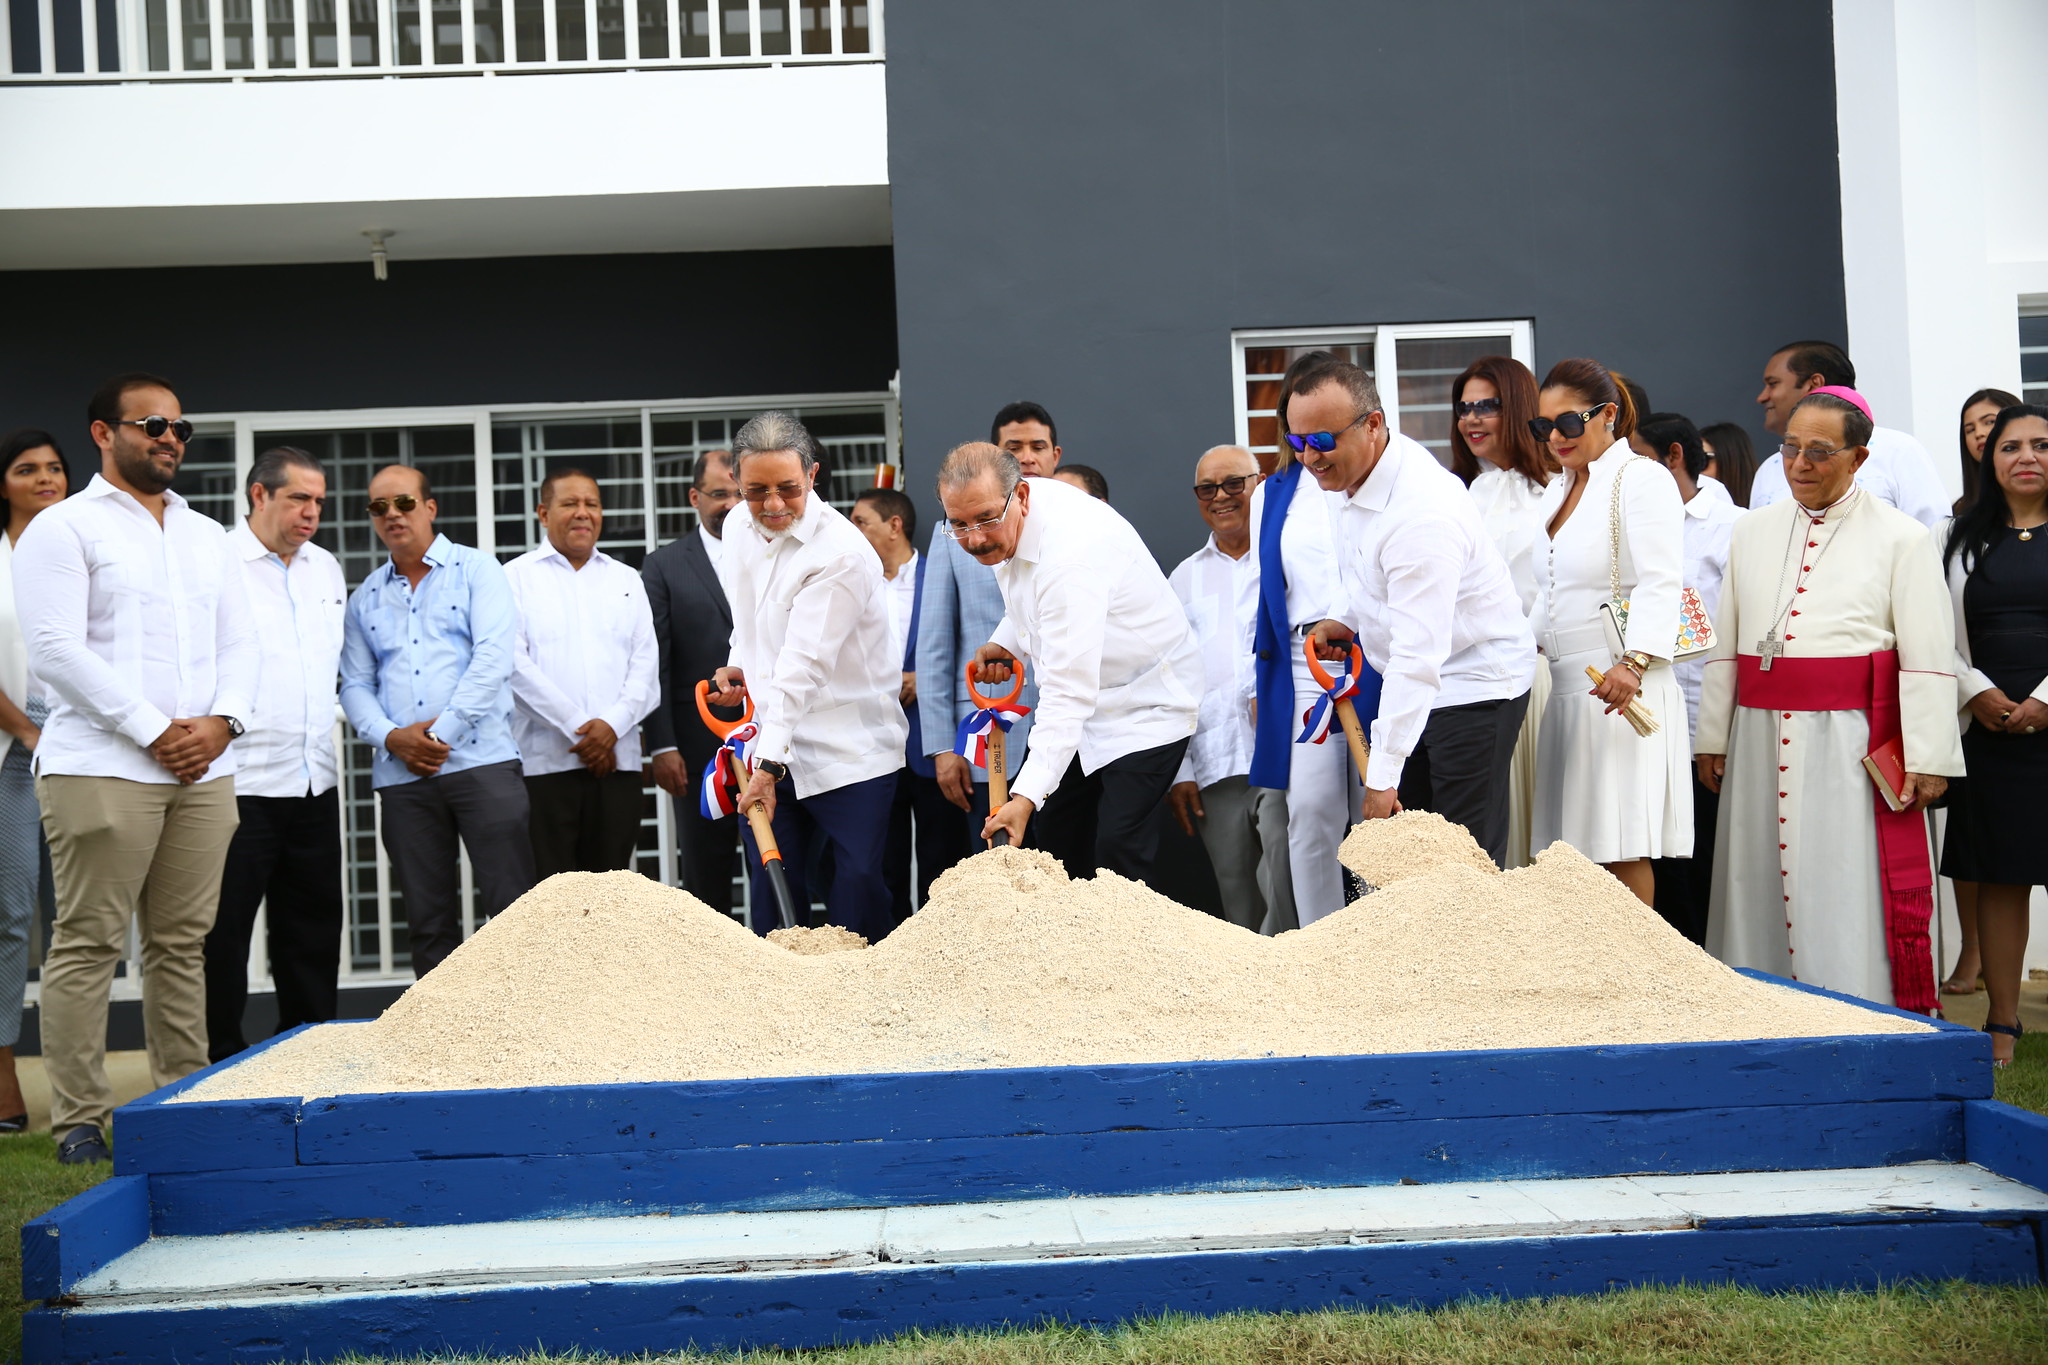 REPÚBLICA DOMINICANA: Continúa democratización acceso viviendas bajo costo; Danilo Medina encabeza apertura proyecto Higüey City Homes